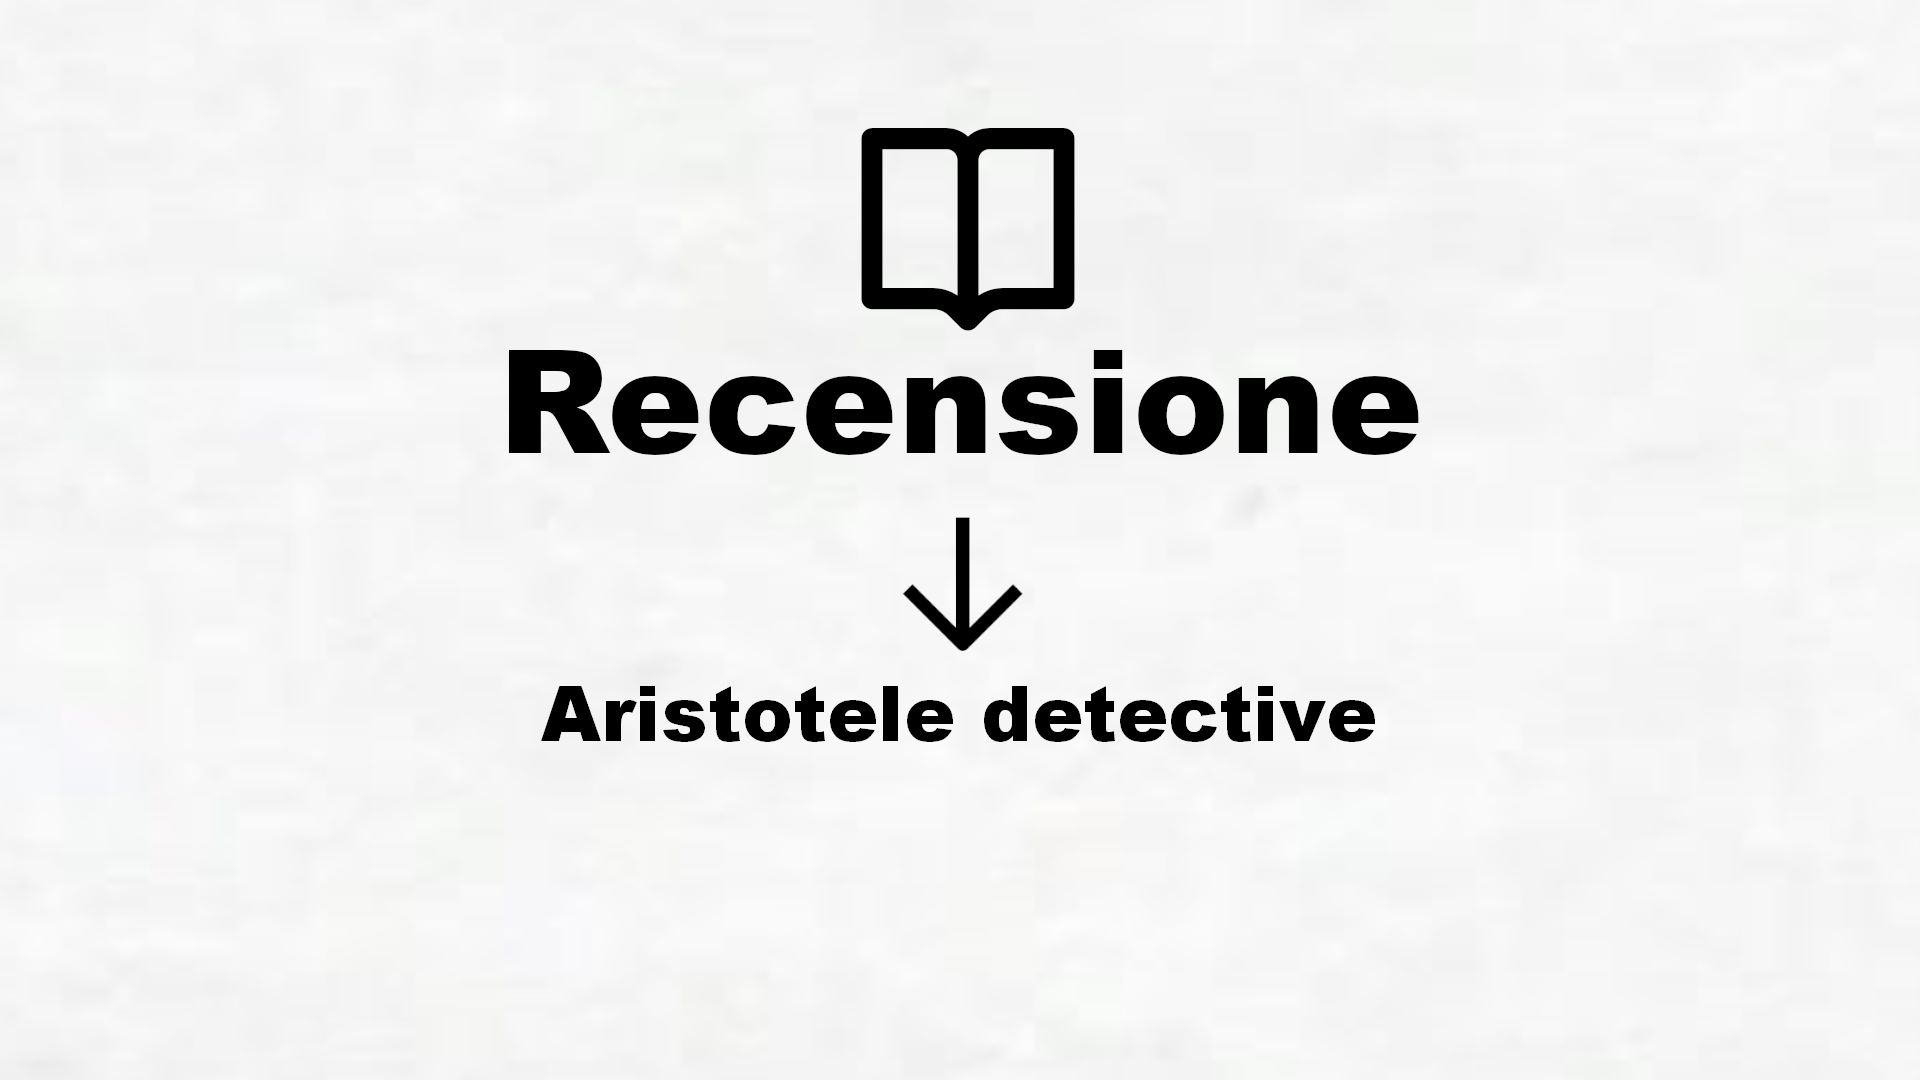 Aristotele detective – Recensione Libro